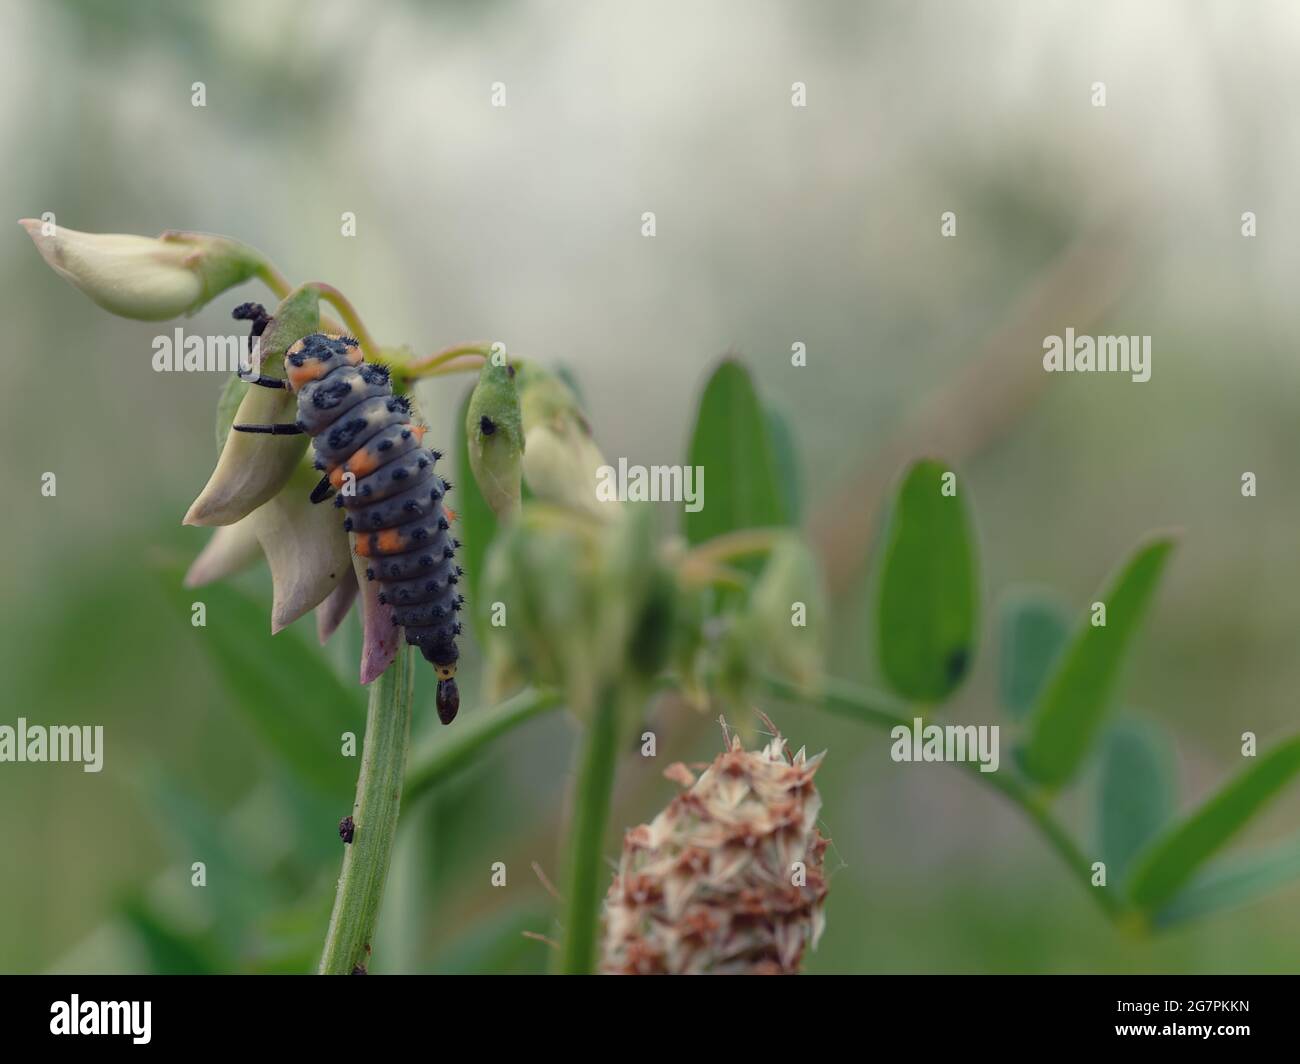 Selektive Fokusaufnahme einer Marienkäfer-Larve auf einer Pflanze Stockfoto